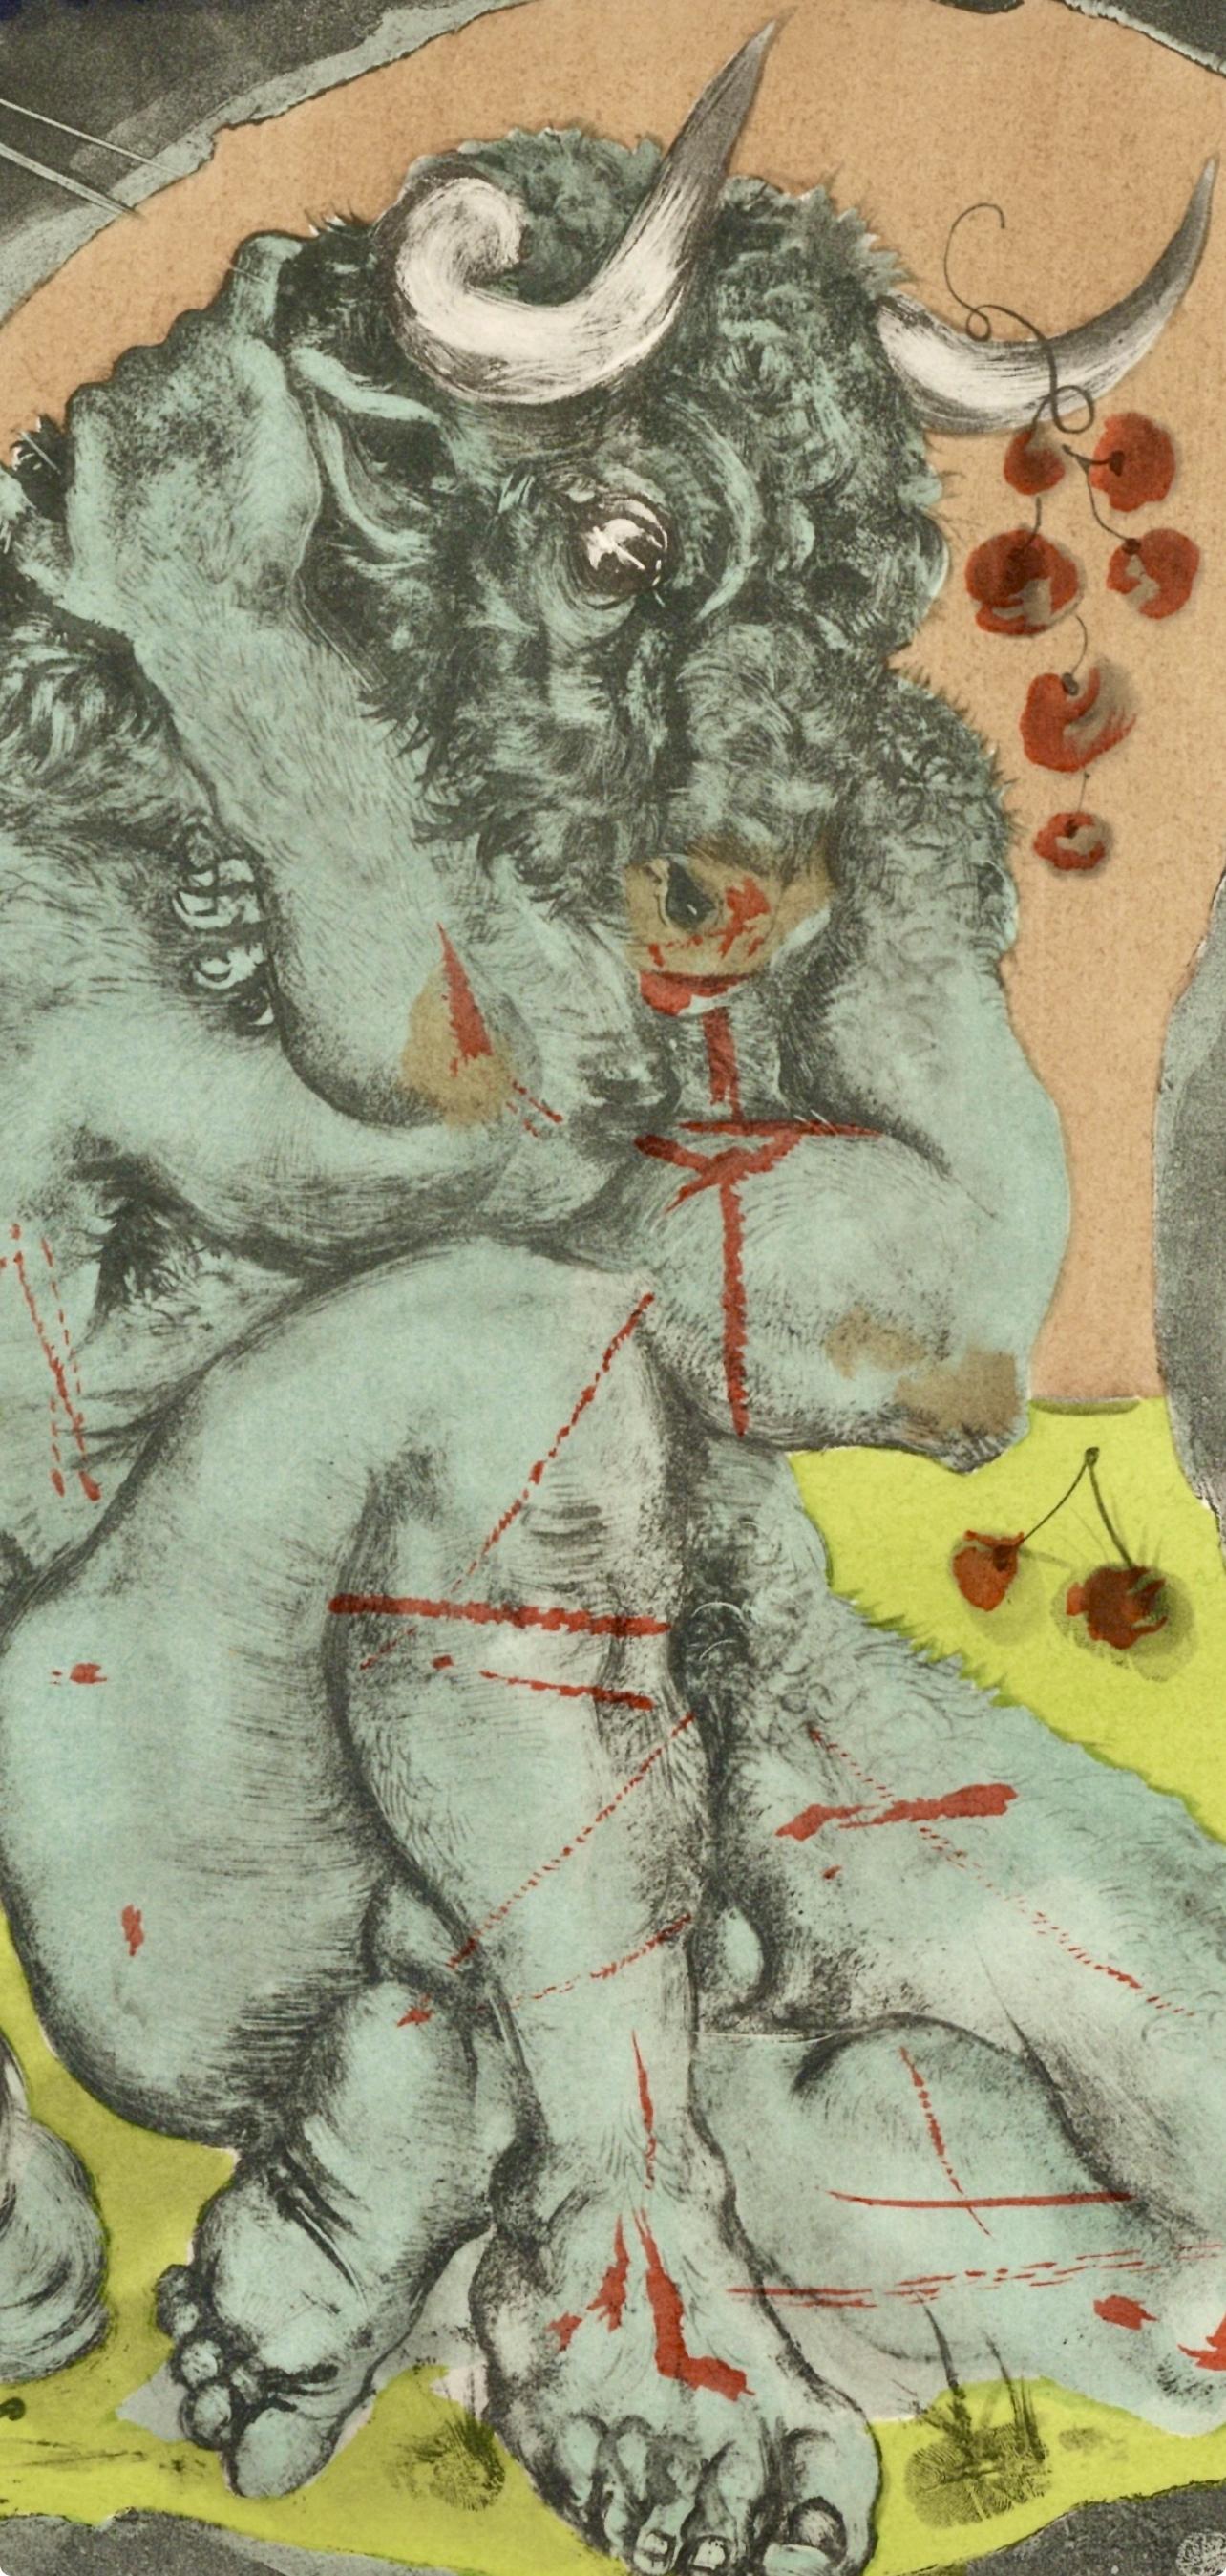 Trémois, Initiation, Fleurs et Flammes (after) - Print by Pierre-Yves Trémois